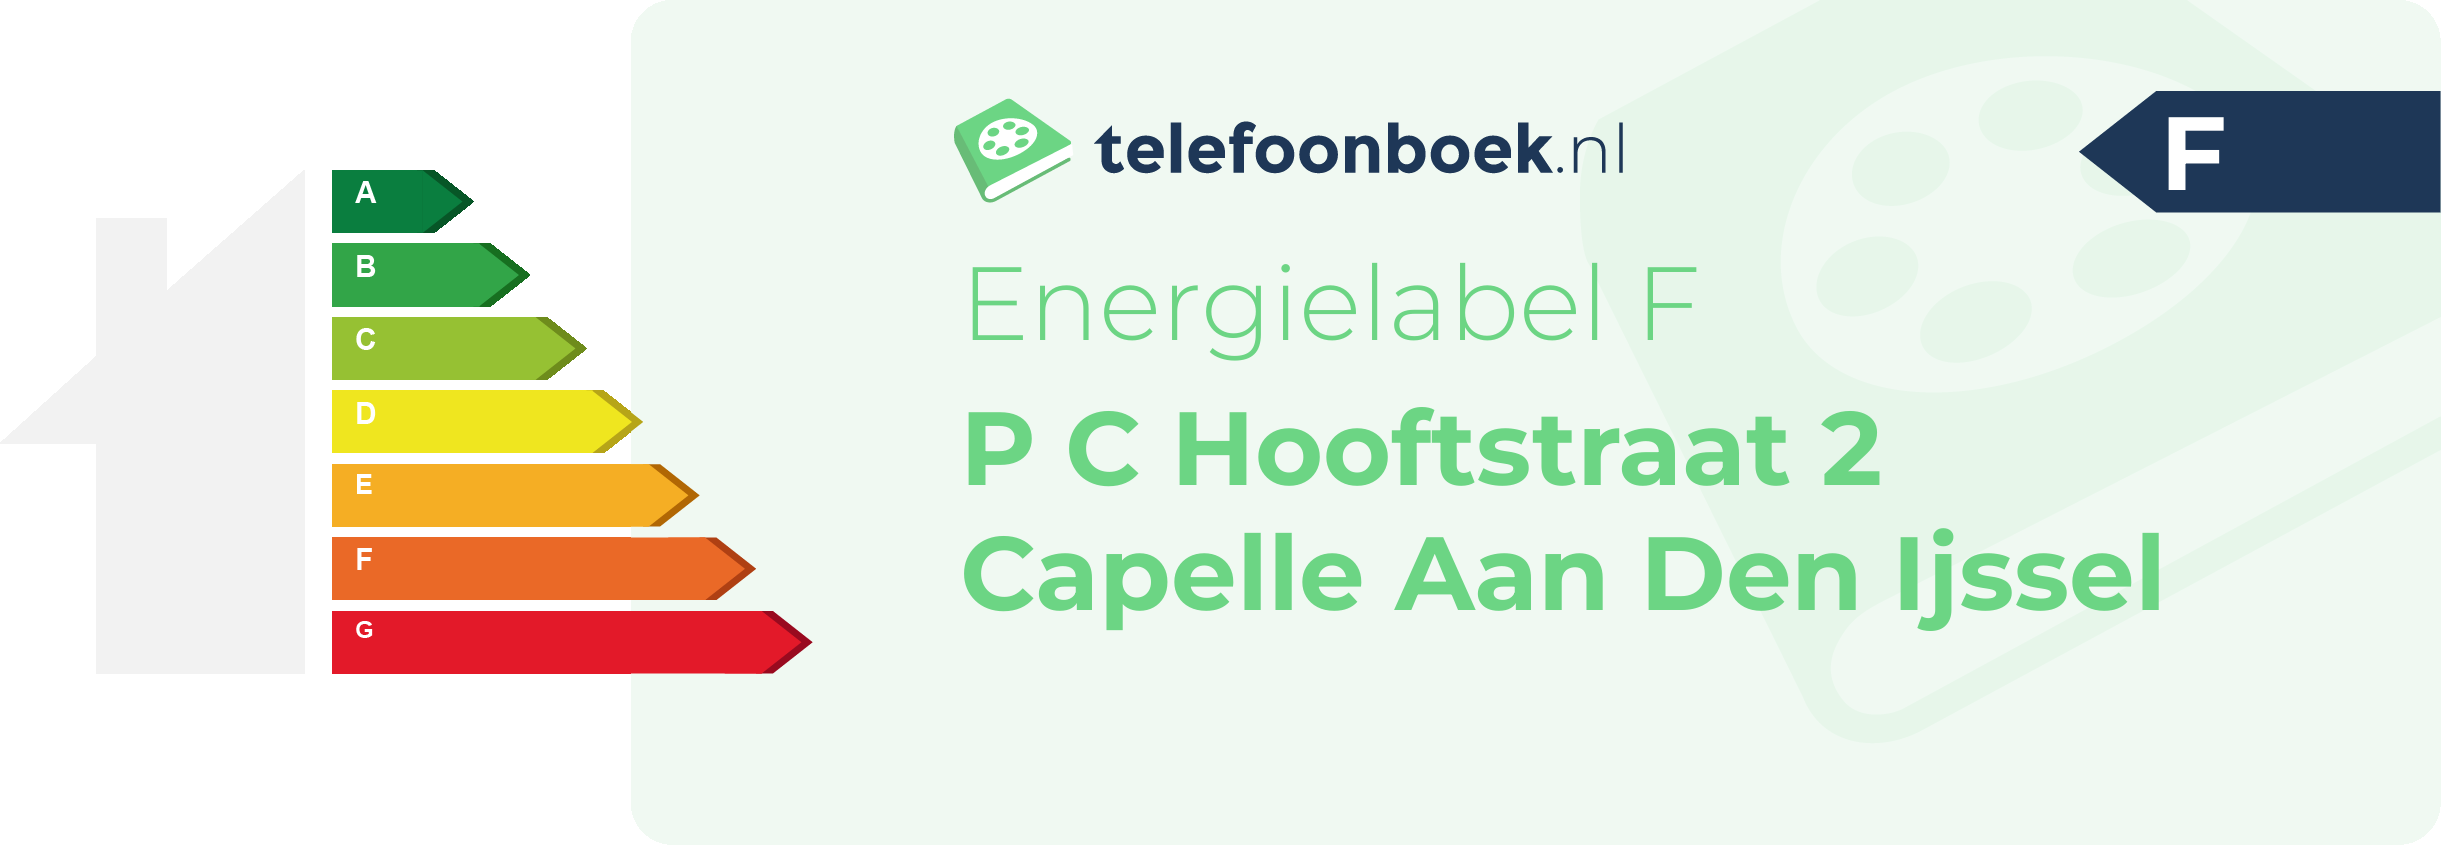 Energielabel P C Hooftstraat 2 Capelle Aan Den Ijssel